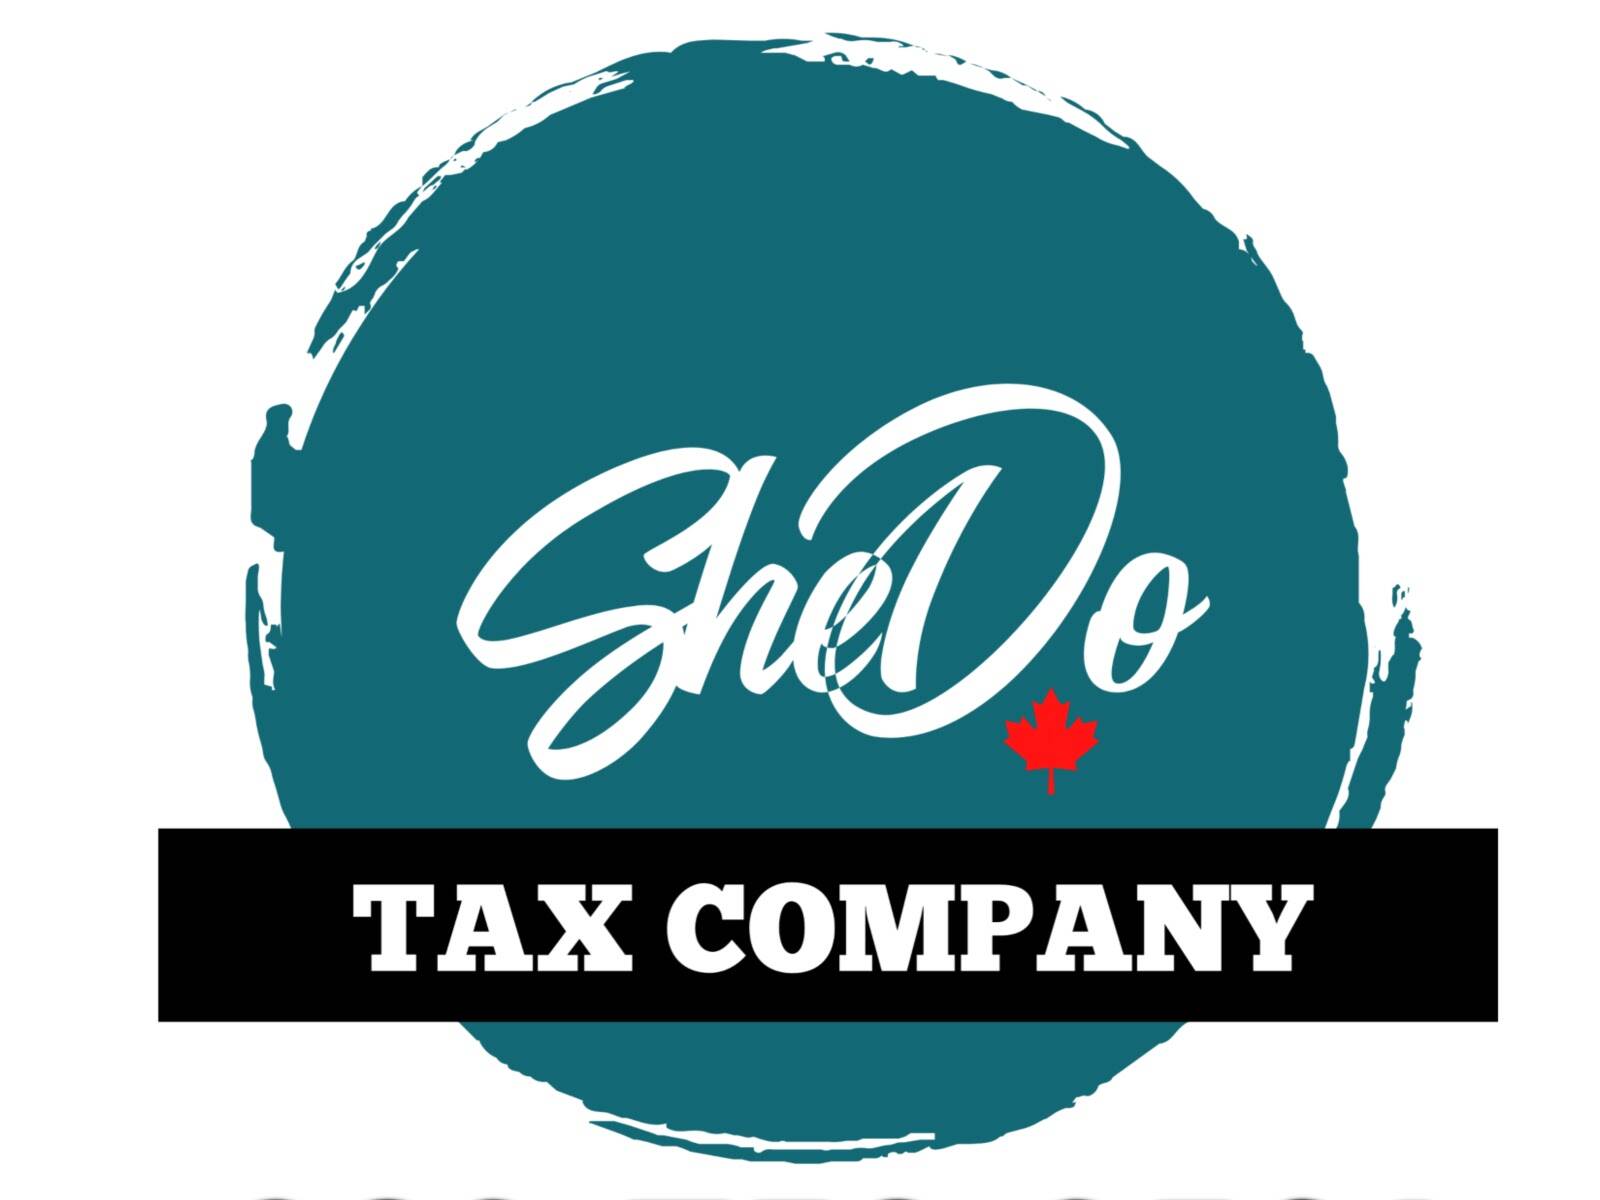 Shedo Tax